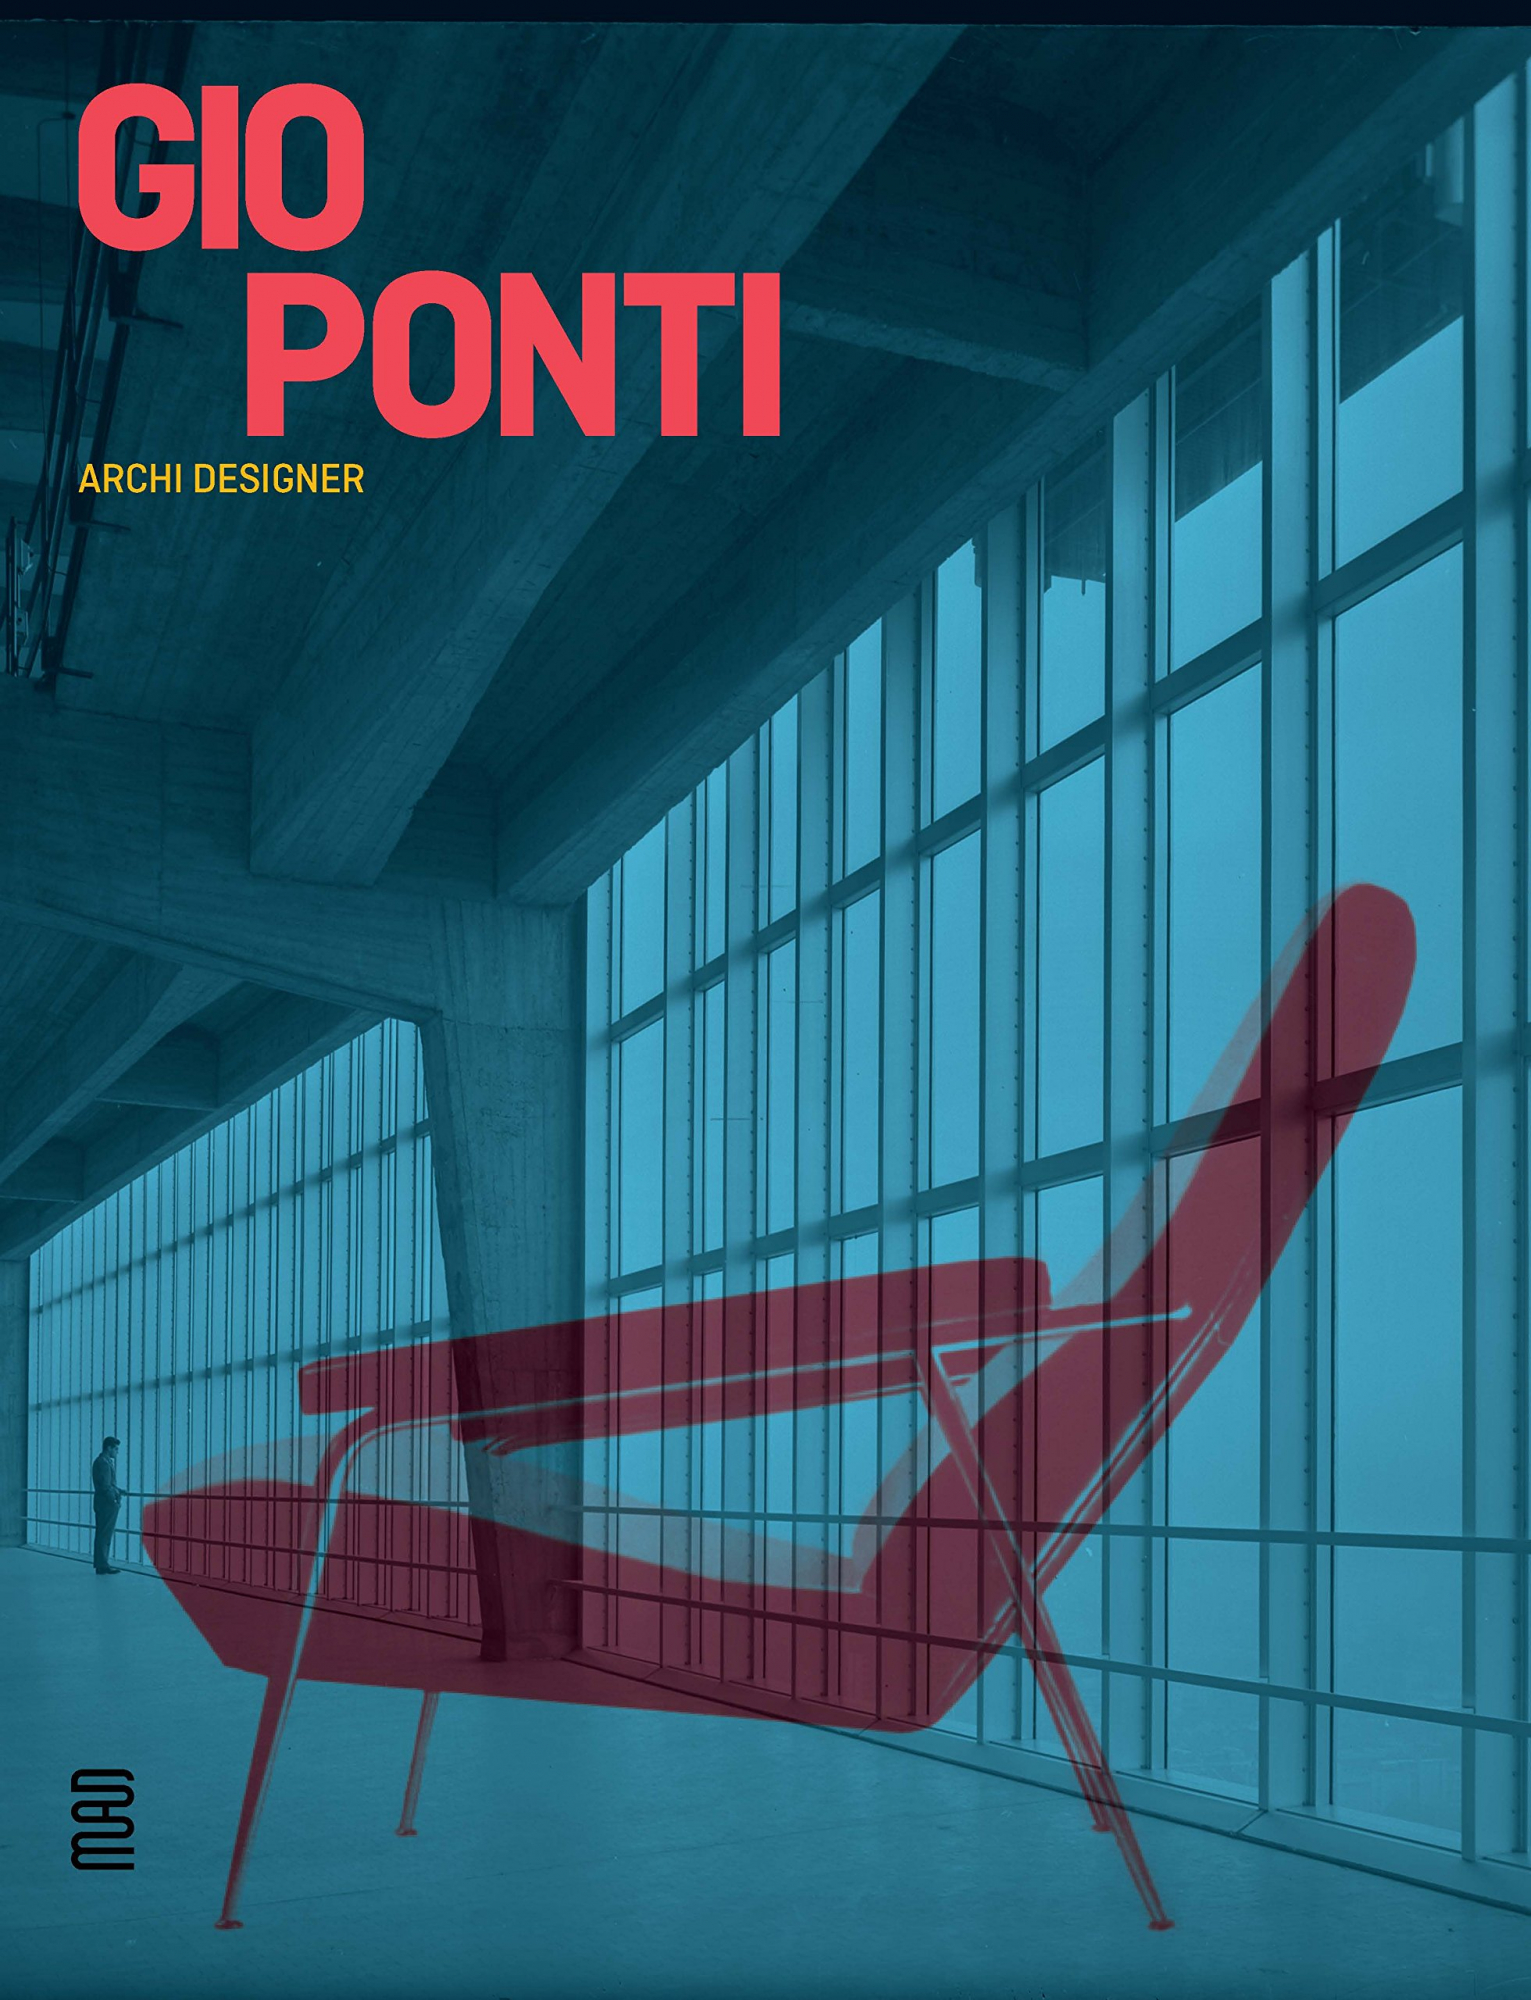 Gio Ponti : archi designer, exposition Paris, Musée des arts décoratifs, octobre 2018, février 2019, MAD, 2018.